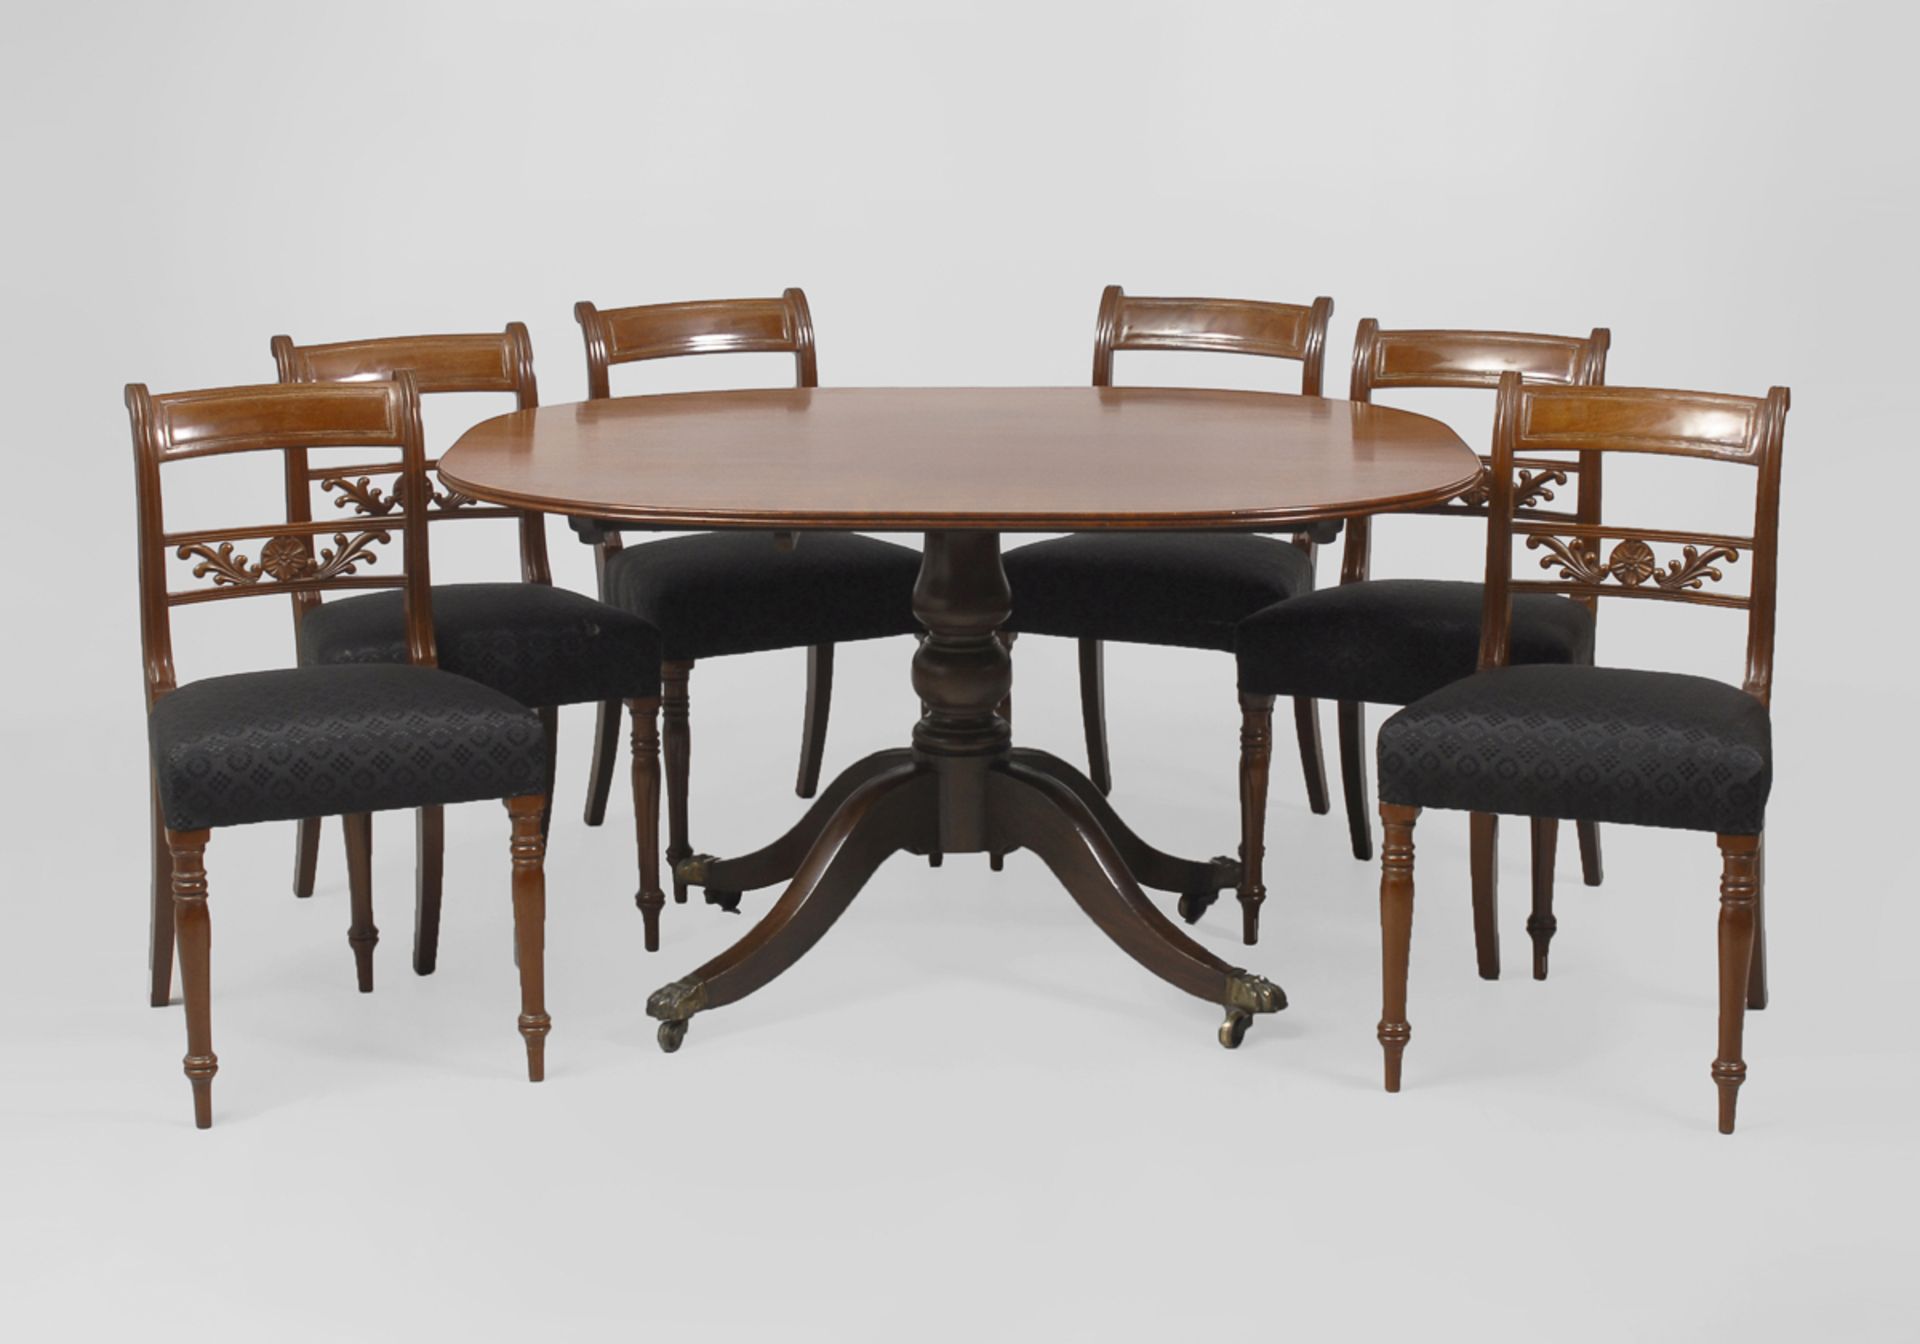 Englische Sitzgruppe mit Tisch und 6 Stühlen.20. Jh. Mahagoni furniert. H Stuhl je 83 cm, Tisch